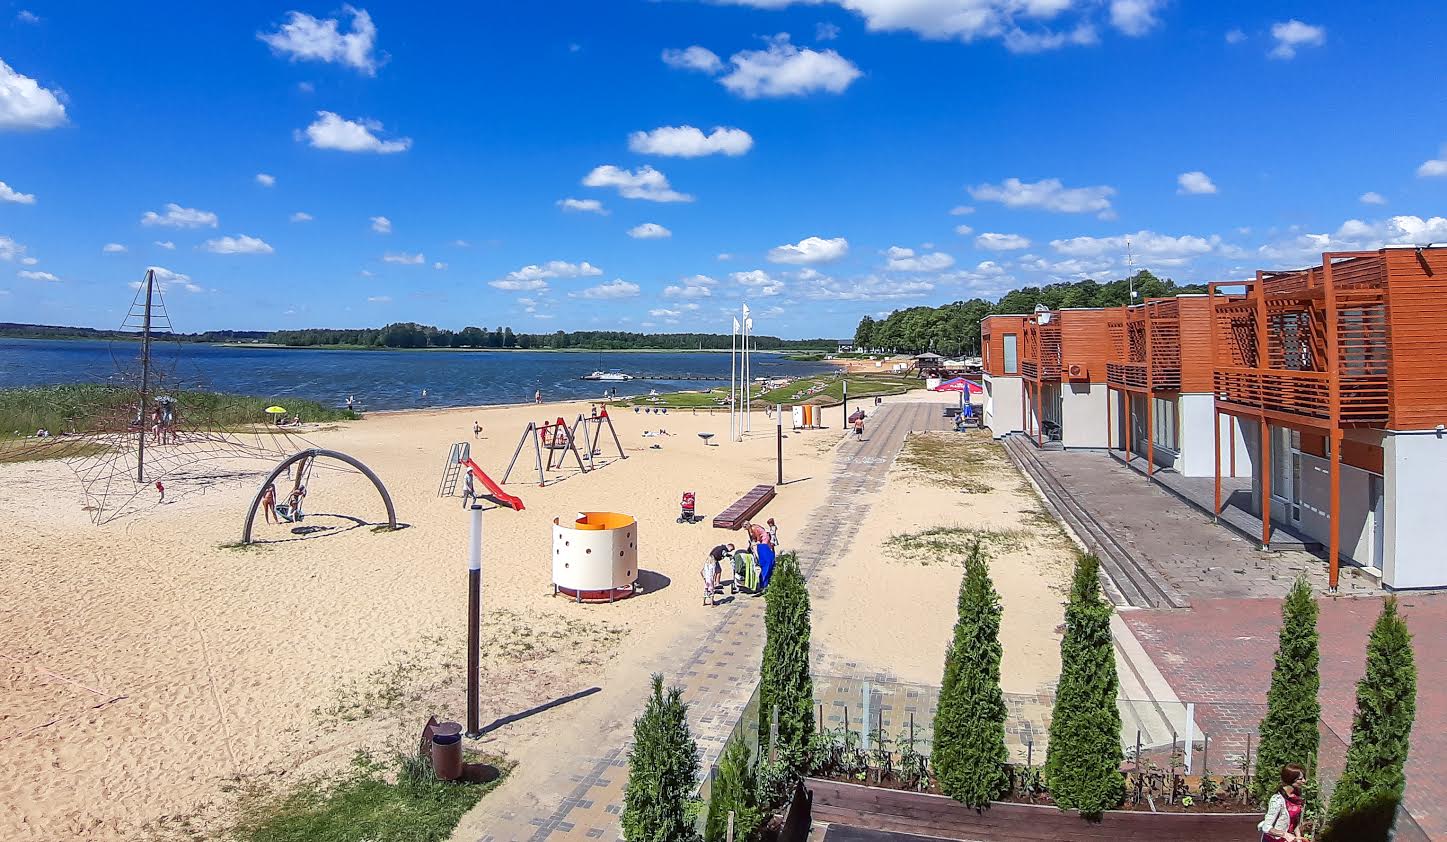 Eesti ettevõte OÜ Tommi Play paigaldab juulikuu lõpuks Tamula randa laste mängulaeva, mille mastikõrgus on seitse meetrit ja pikkust üle 12 meetri. Foto: AIGAR NAGEL